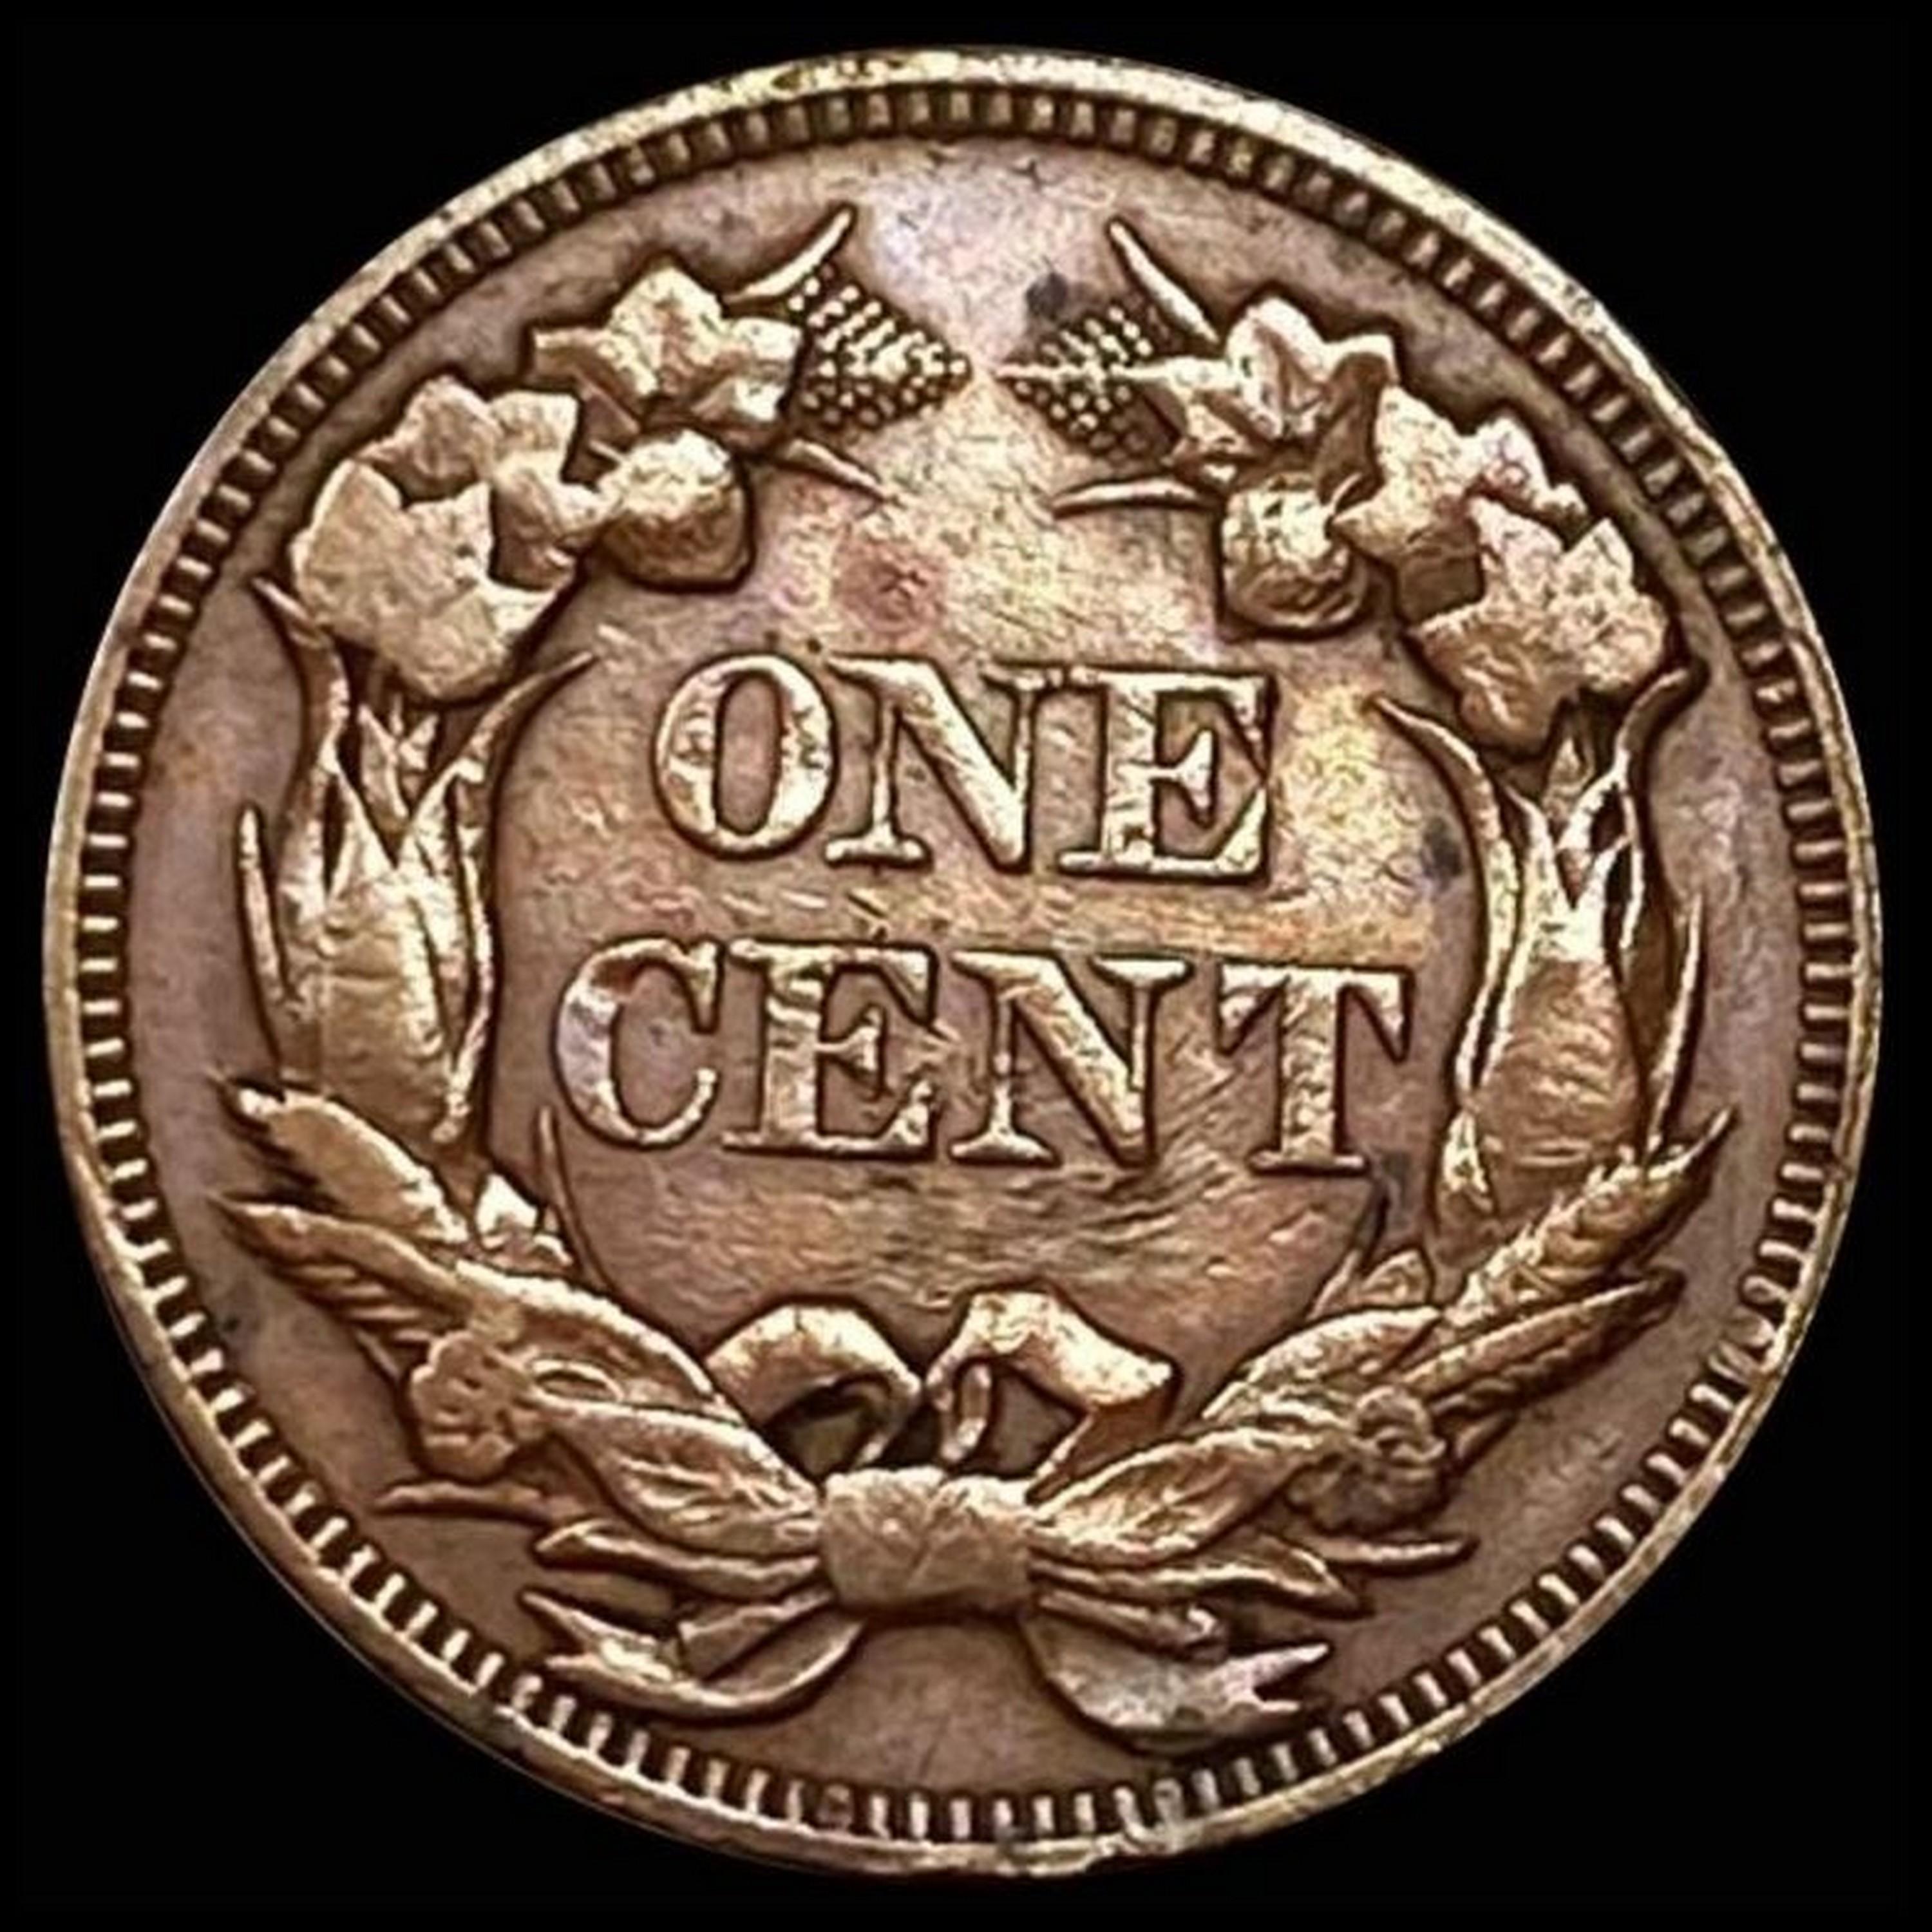 1856 Flying Eagle Cent CHOICE AU